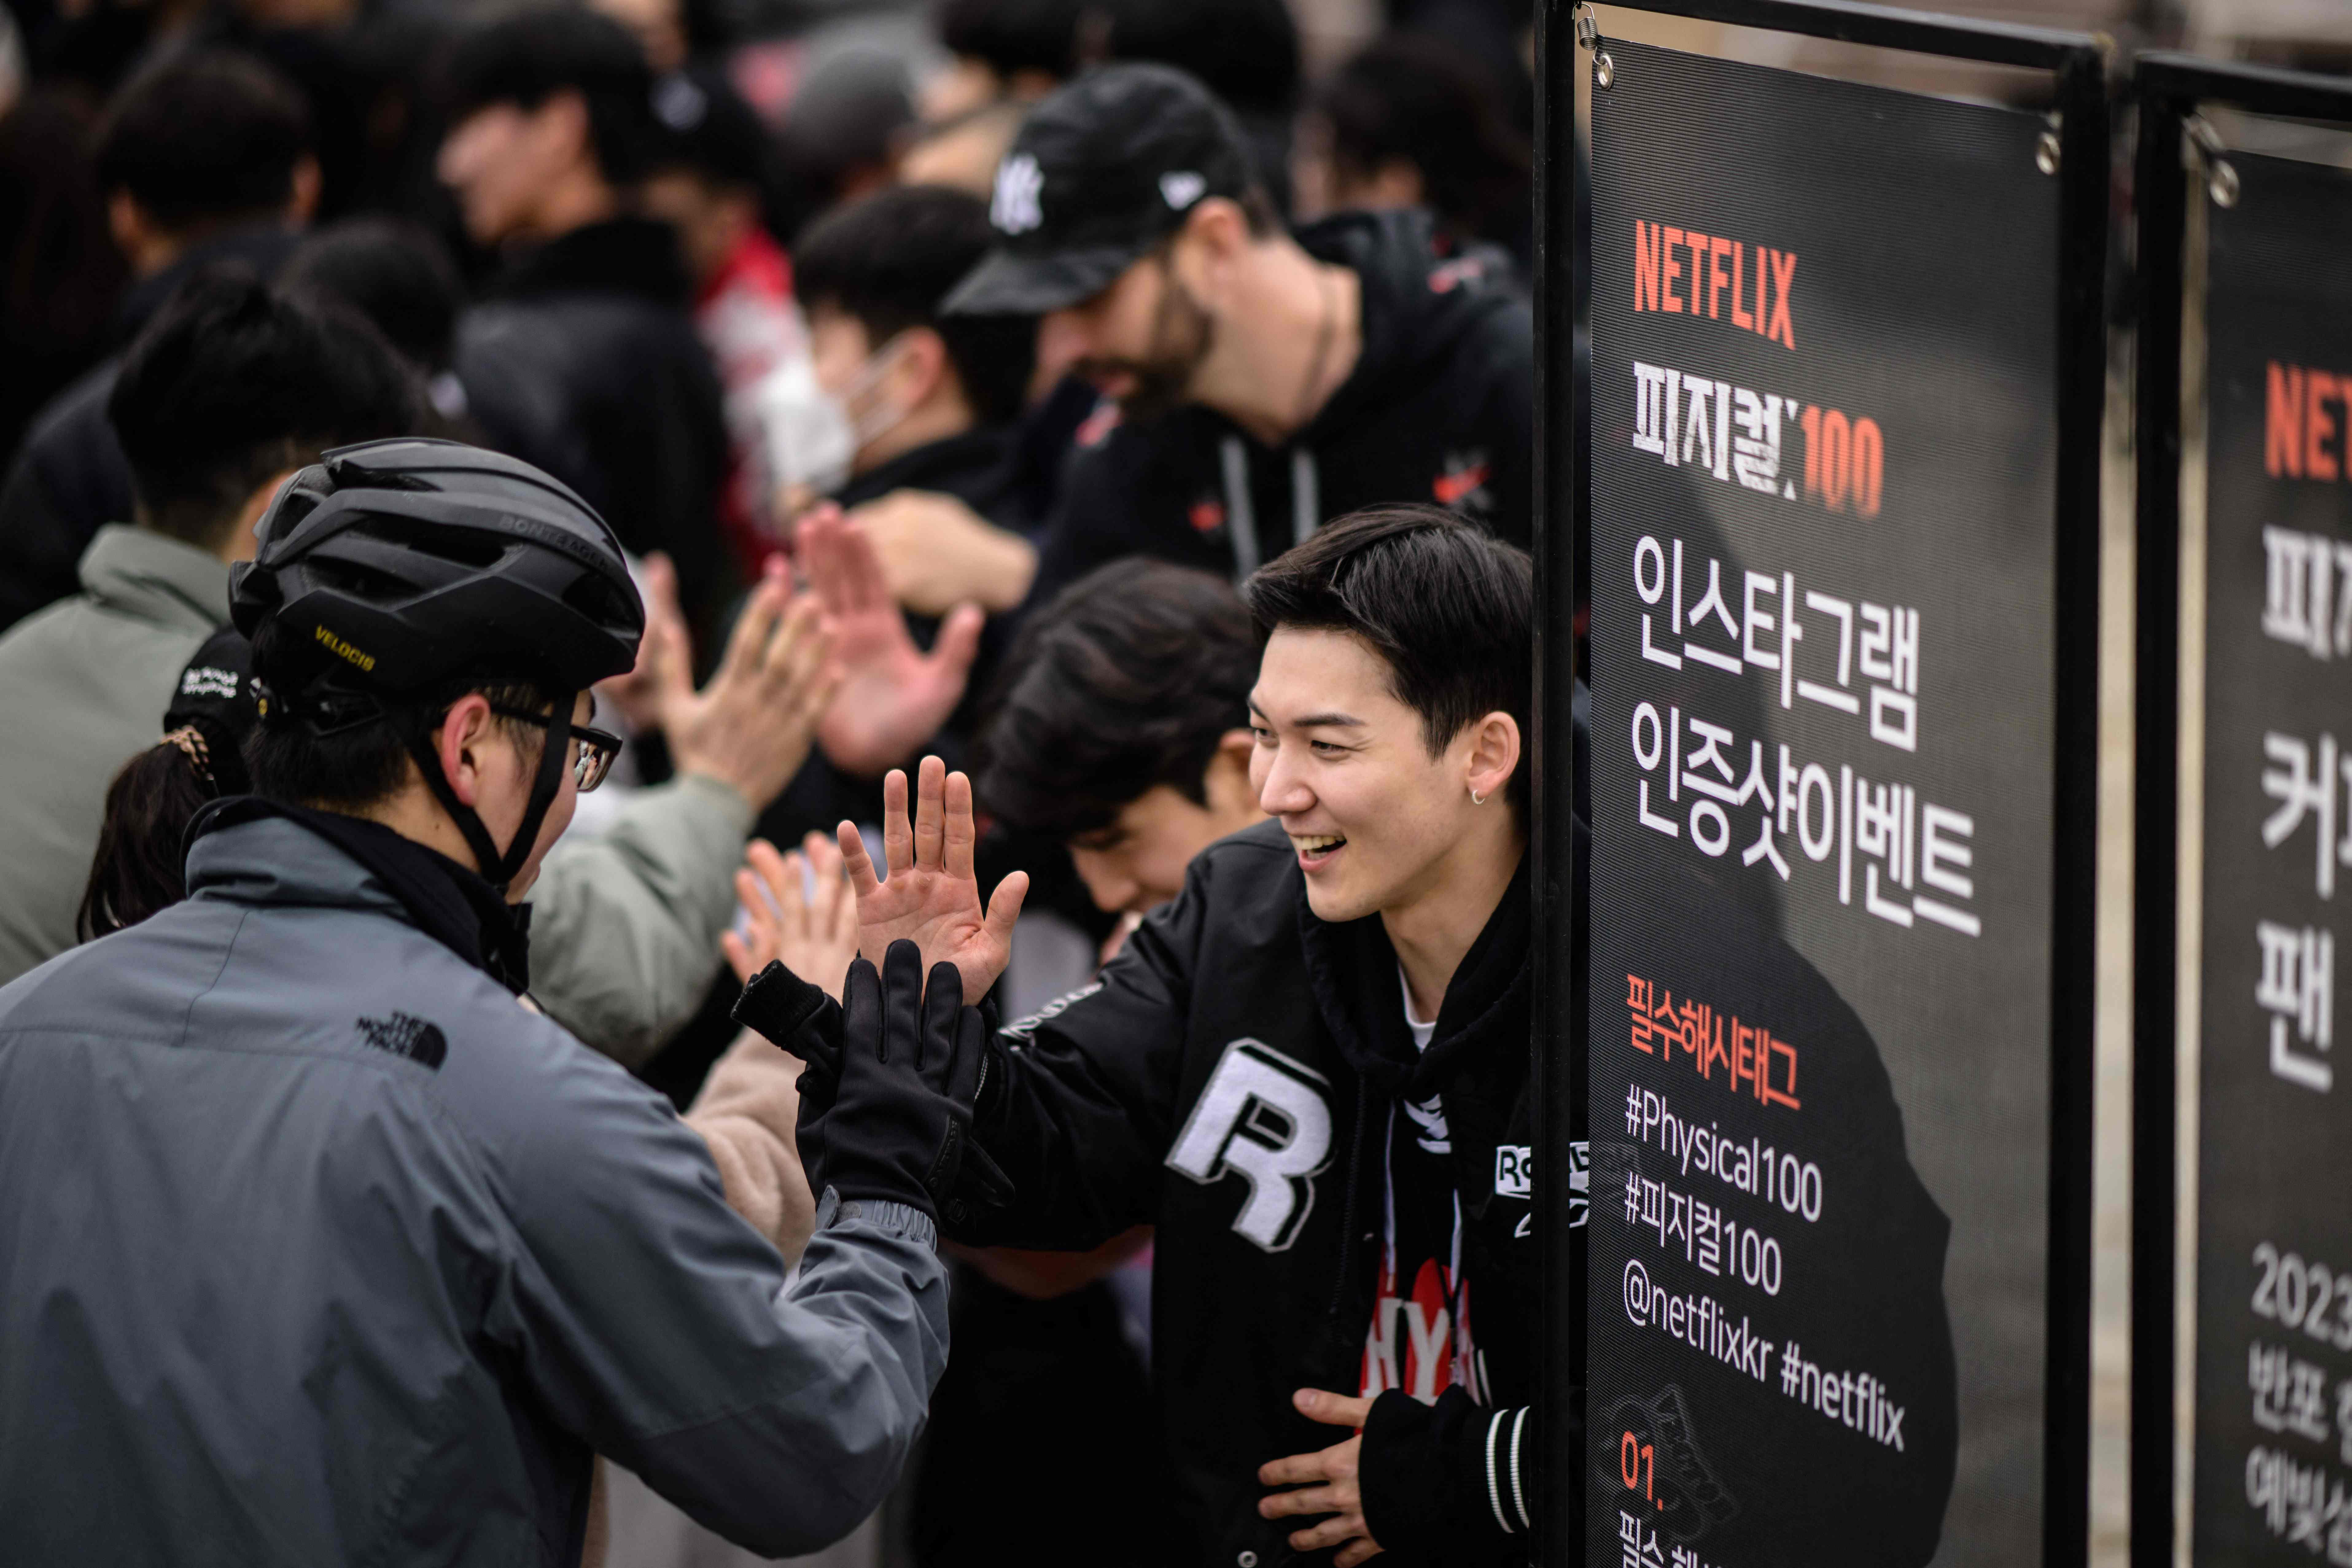 Top 20 Melhores Doramas Coreanos Netflix em 2023 (Kingdom, Round 6